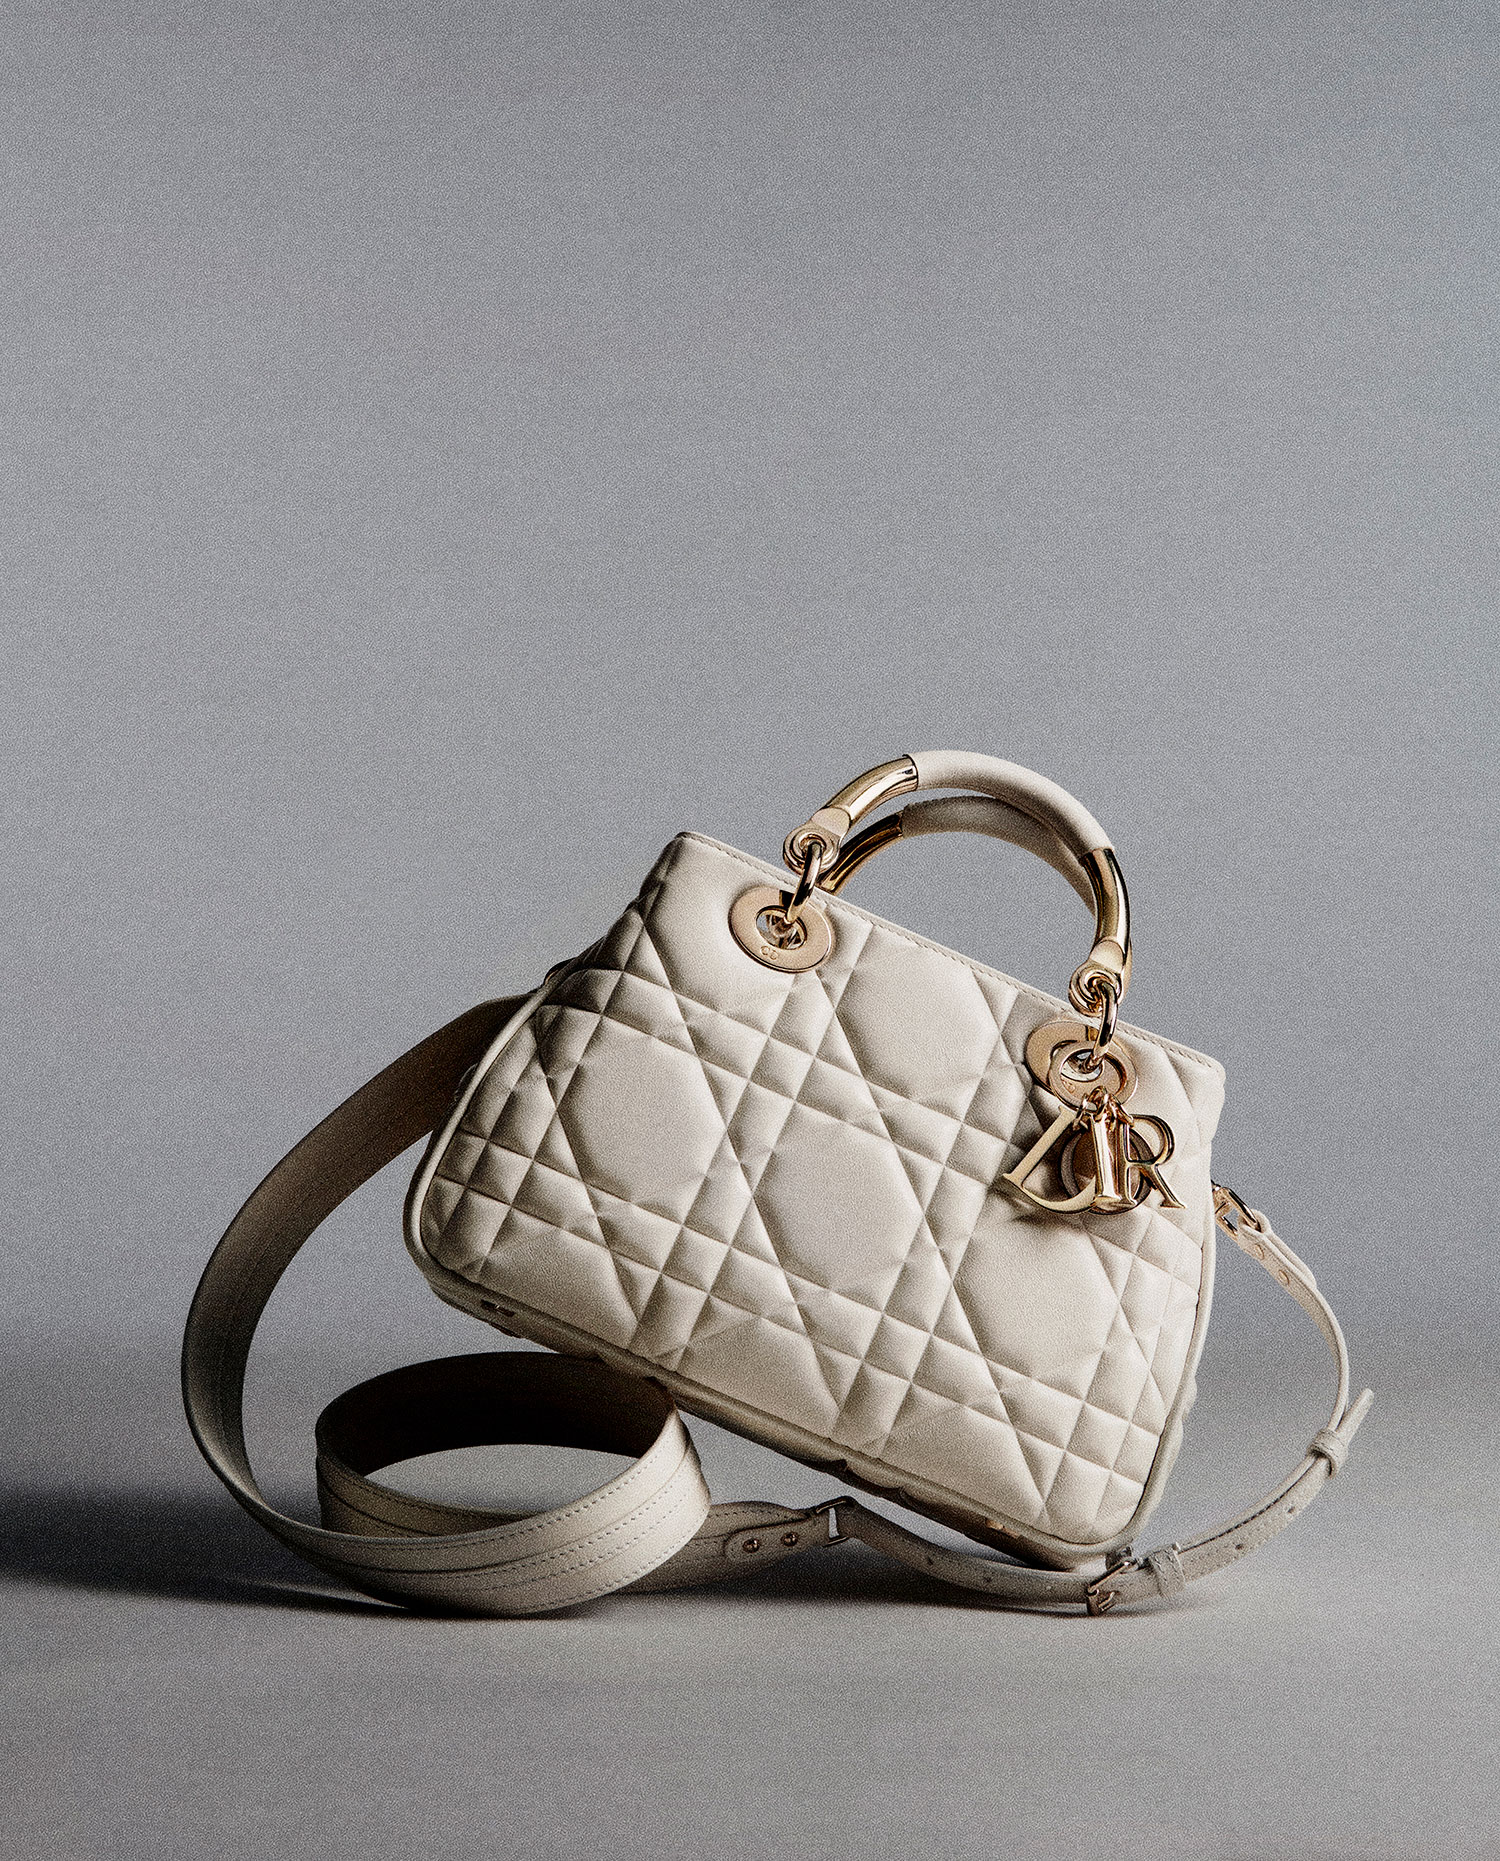 Dior ディオール レディディオール ハンドバッグ